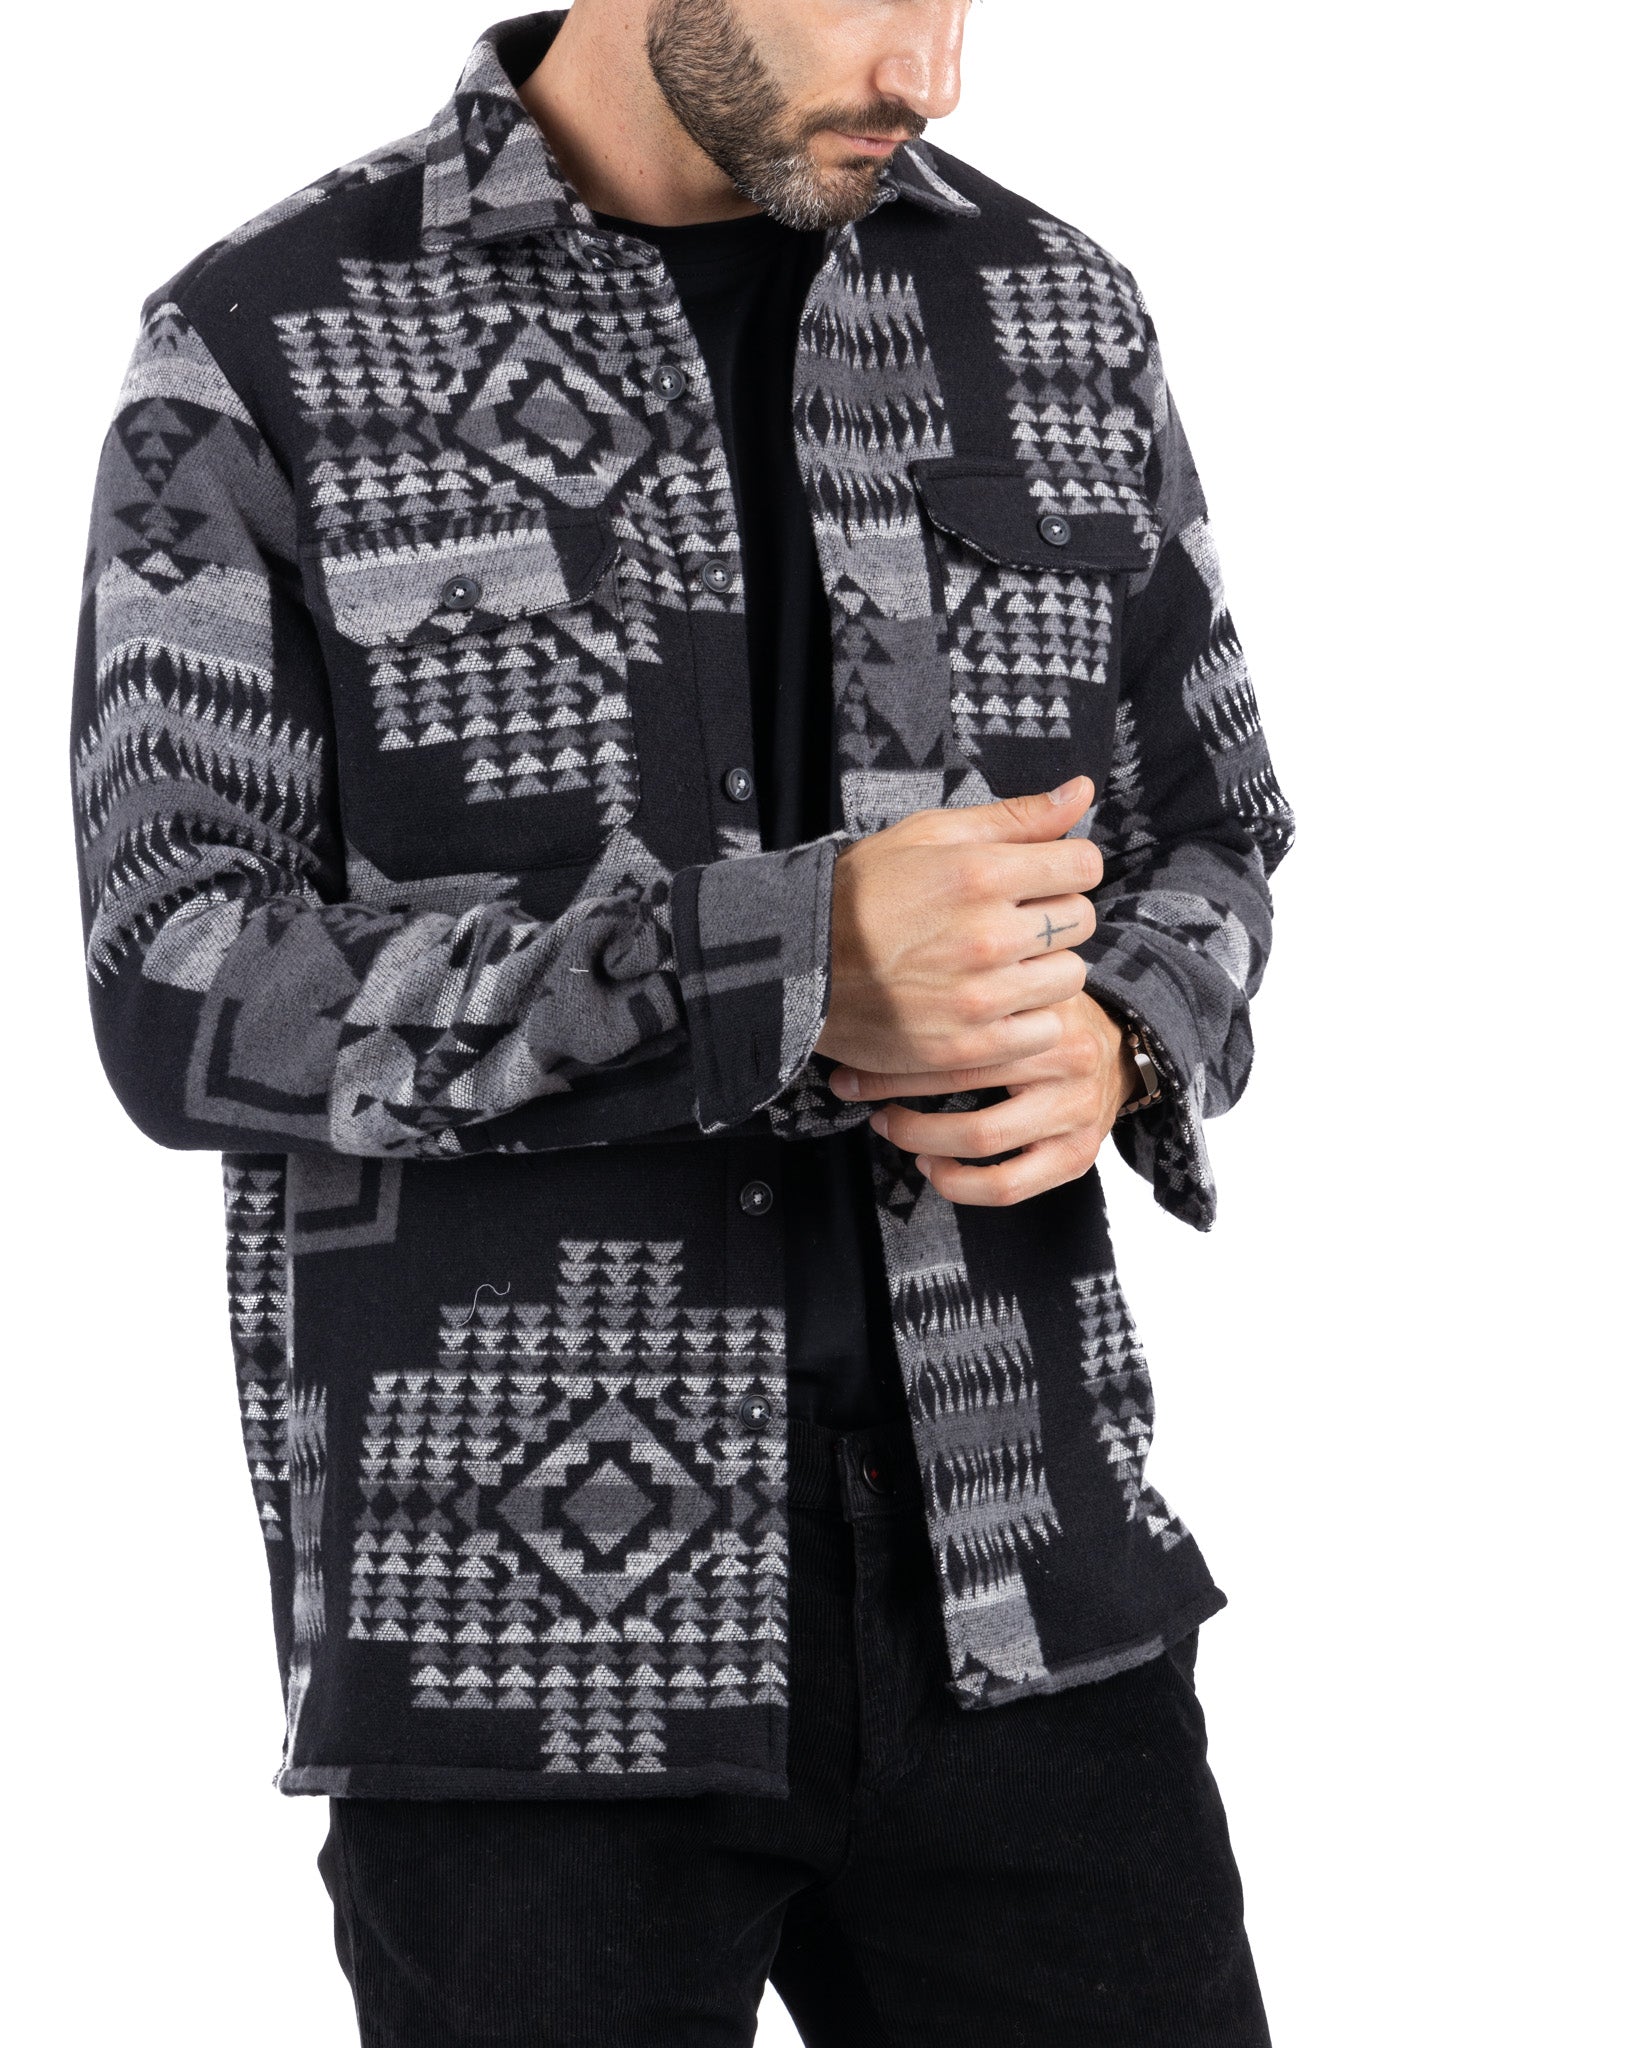 Mayor - black ethnic patterned jacket